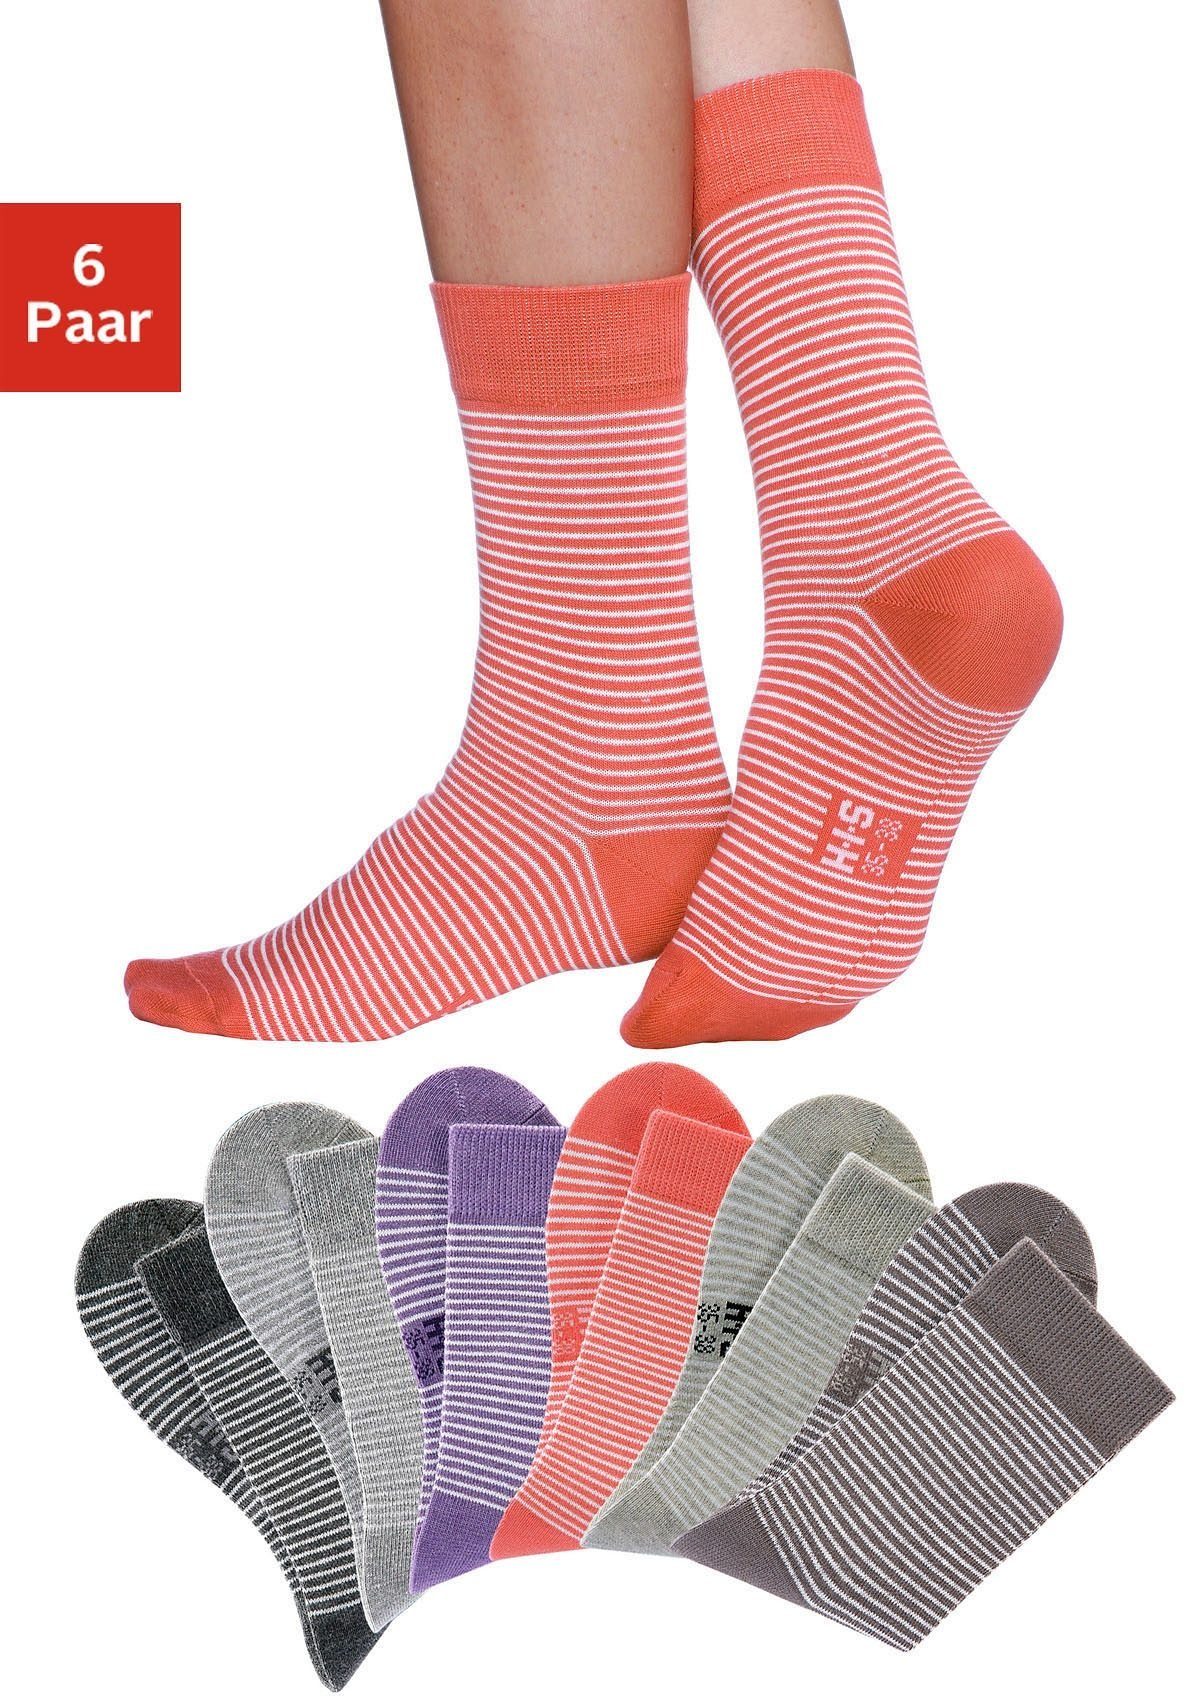 H.I.S Socken (Set, 6-Paar) mit druckfreiem Bündchen 2x grau-meliert-ecru, hummer-ecru, beige-meliert-ecru, lila-meliert-ecru, taupe-ecru